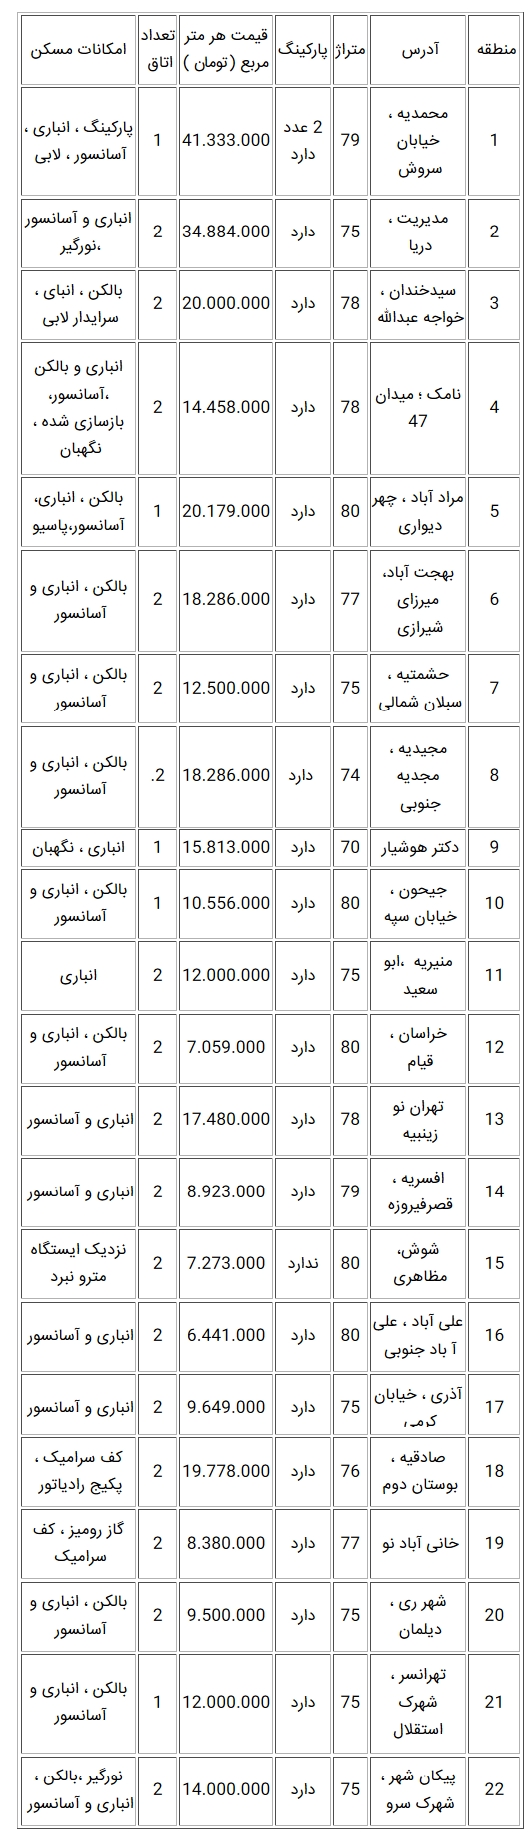 قیمت روز آپارتمان در تهران 